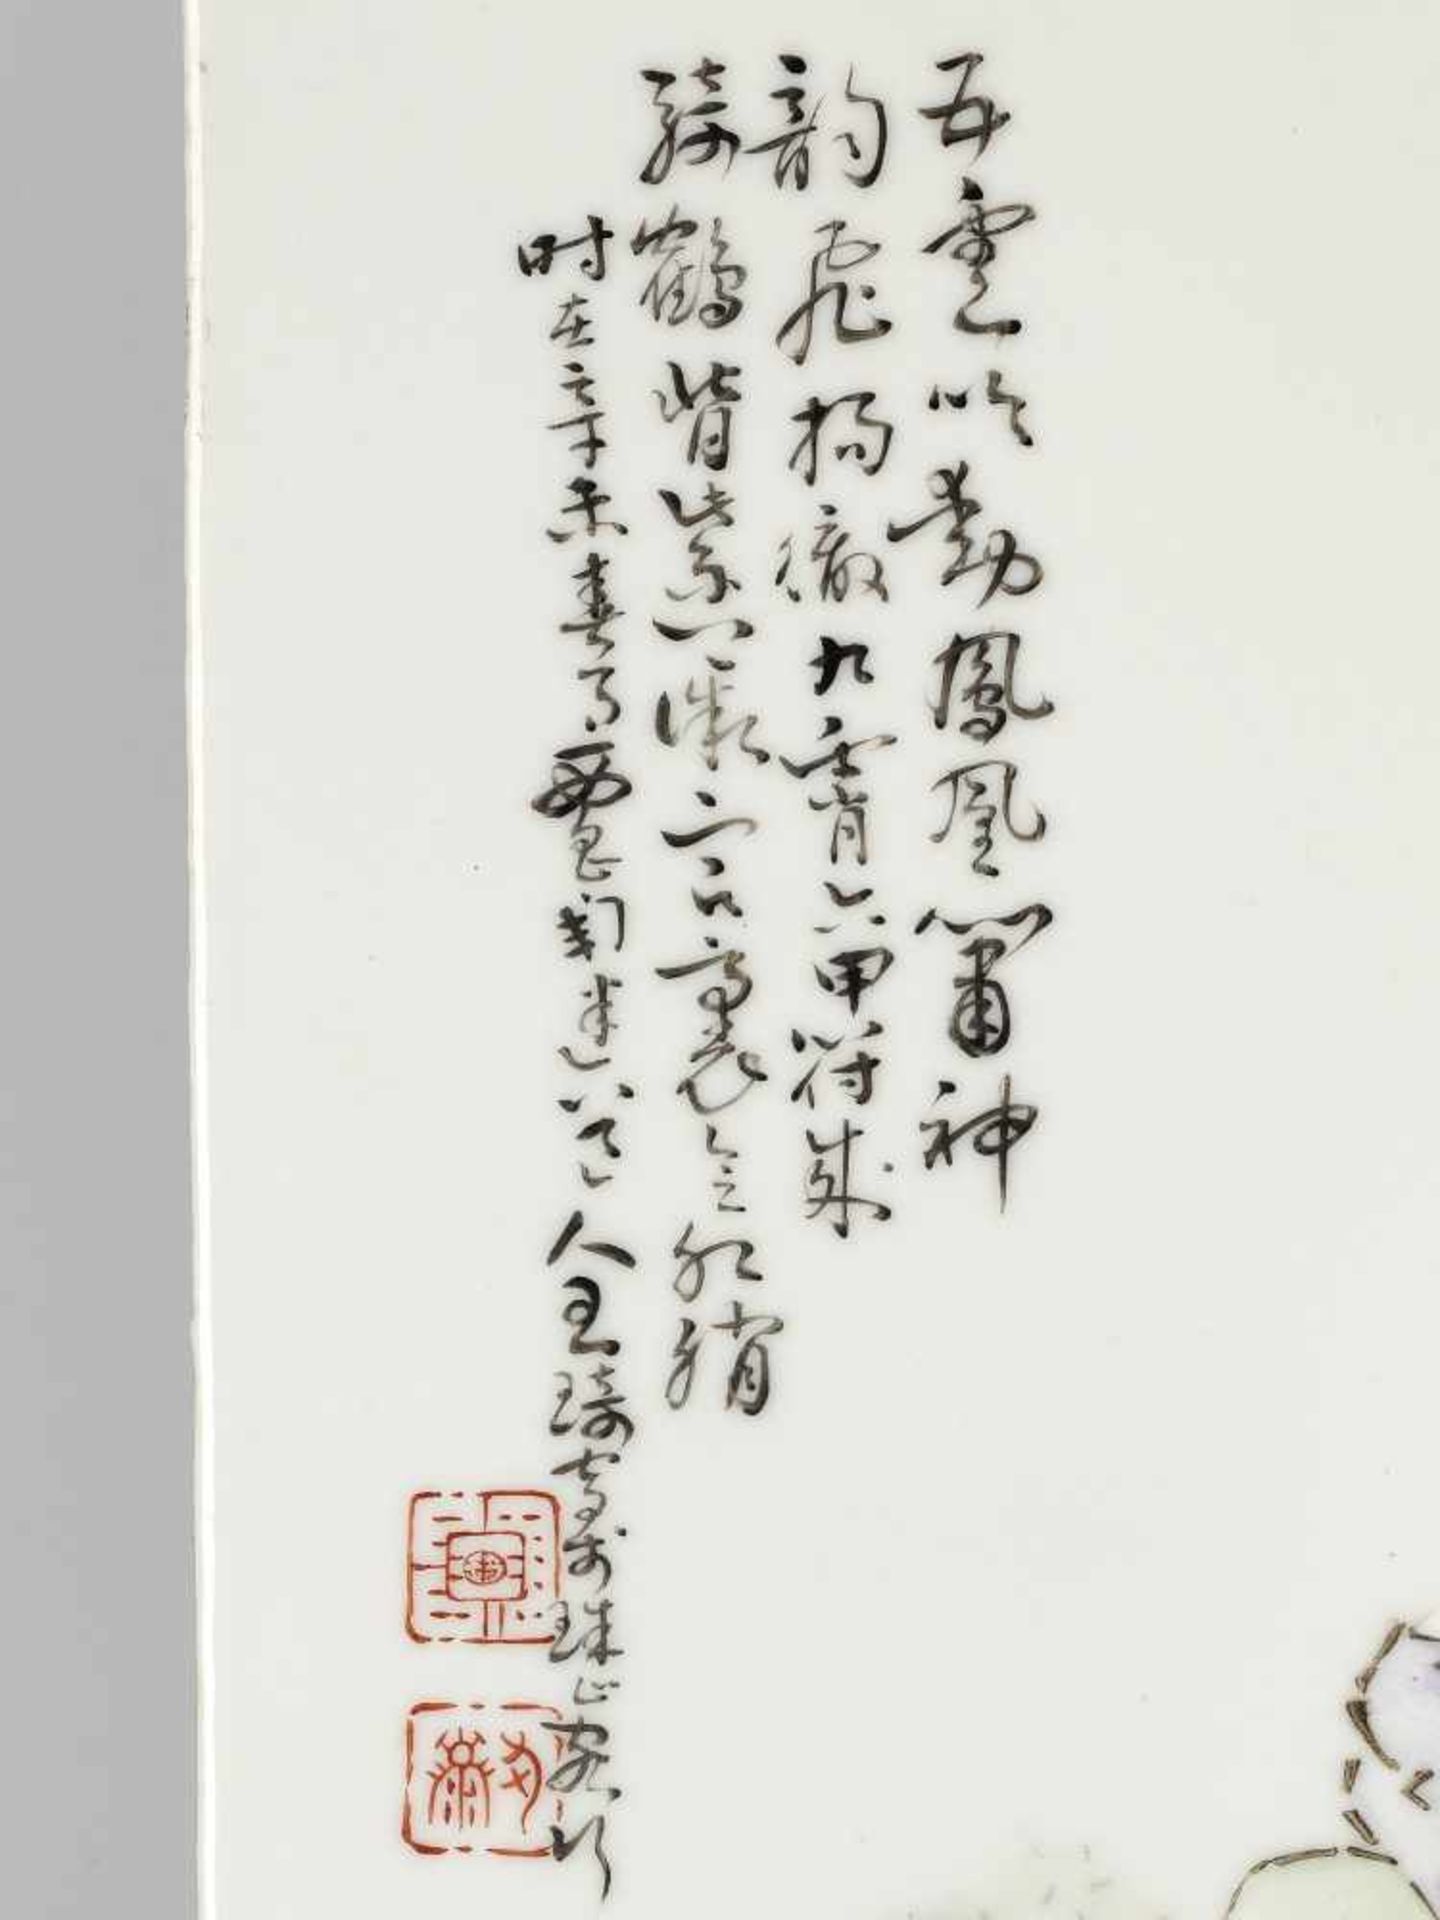 A PORCELAIN PLAQUE BY WANG QI, 1931China, signed Xichang Taomi daoren Wang Qi and dated 1931. Two - Bild 2 aus 5